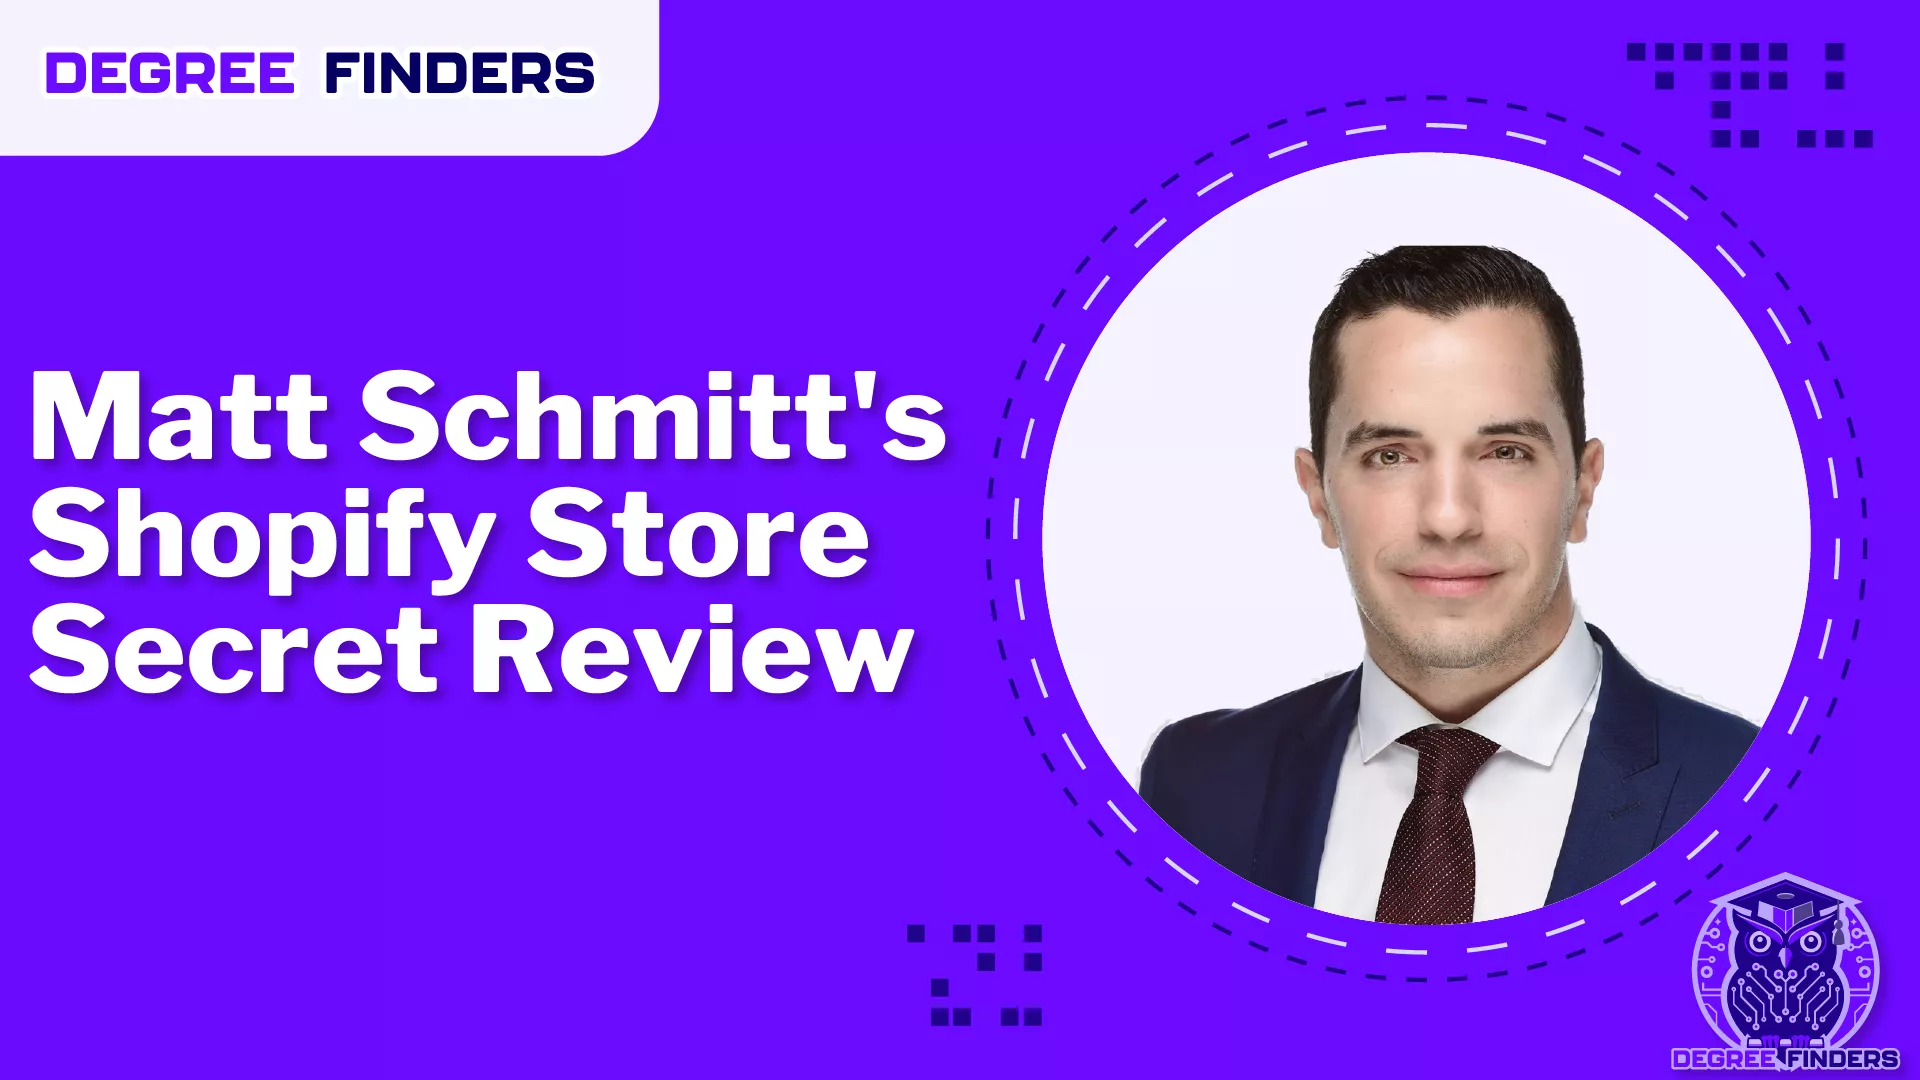 Matt Schmitts Shopify Store Secret Review